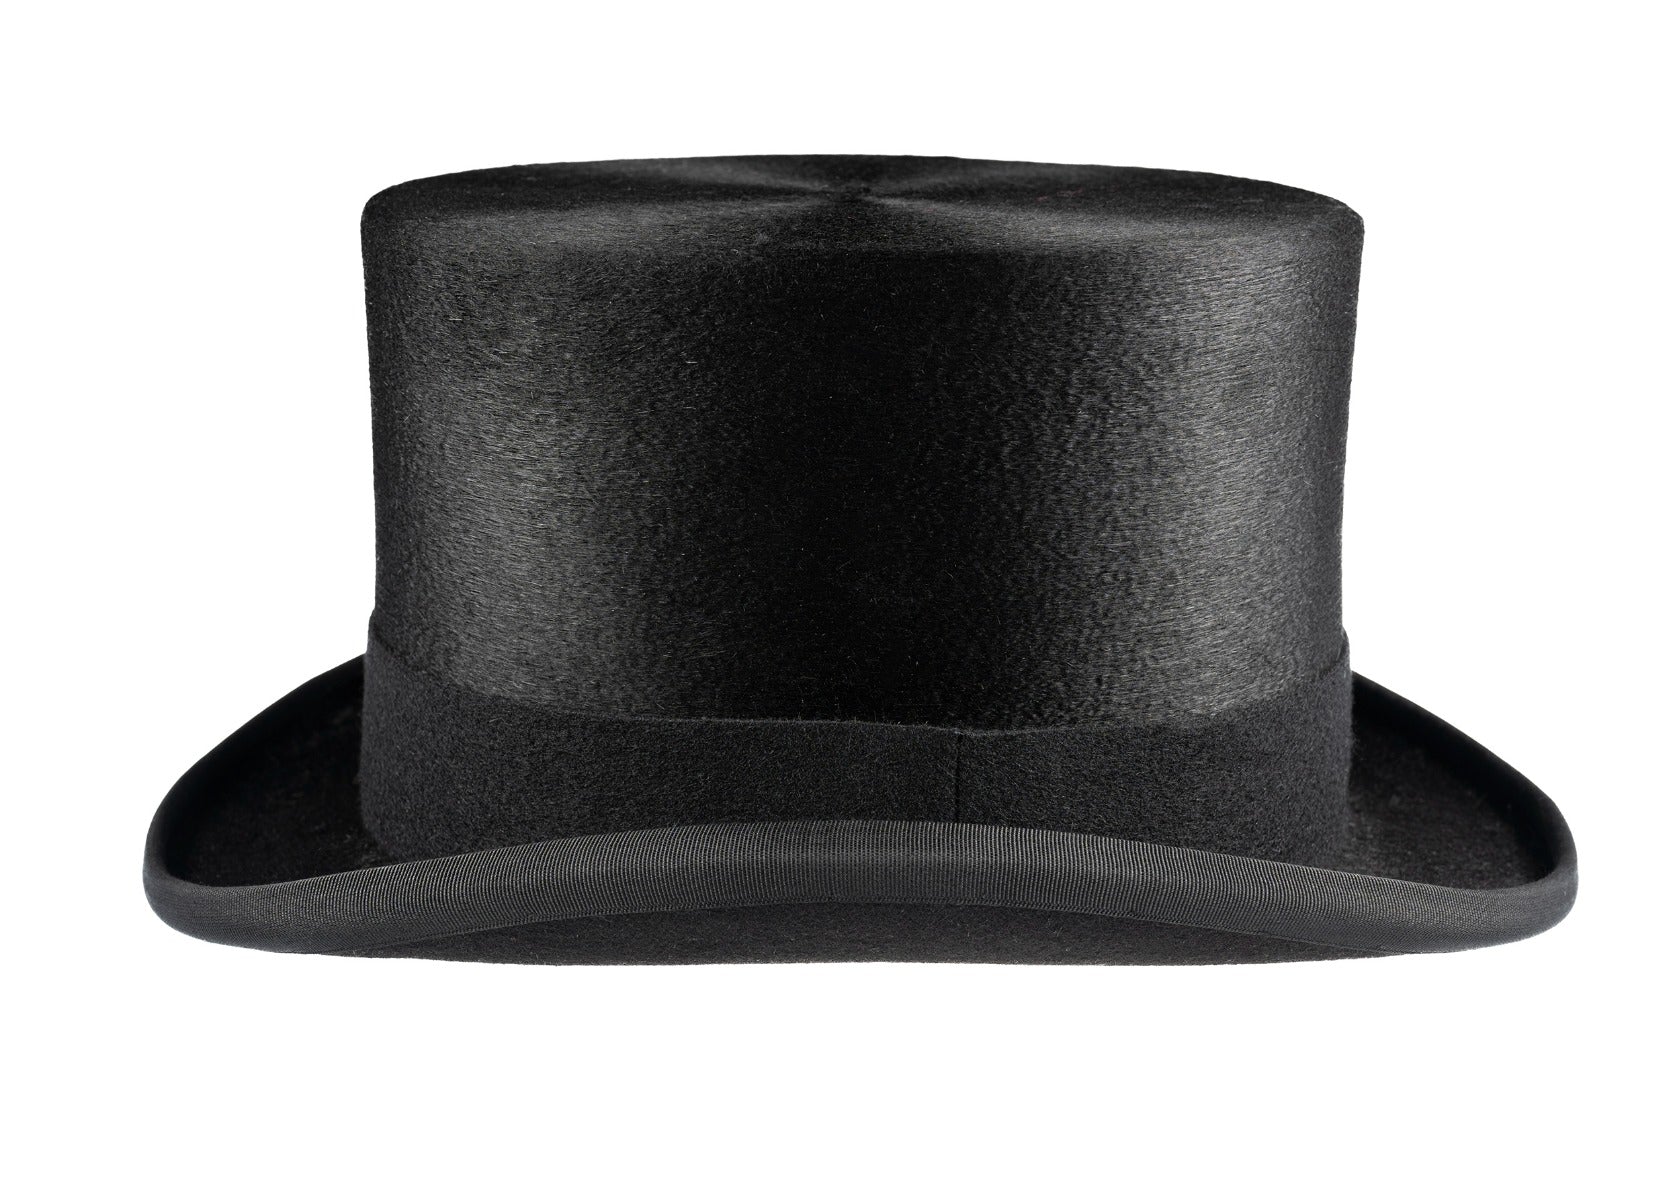 Luxury Black Fur Felt Melusine Top Hat